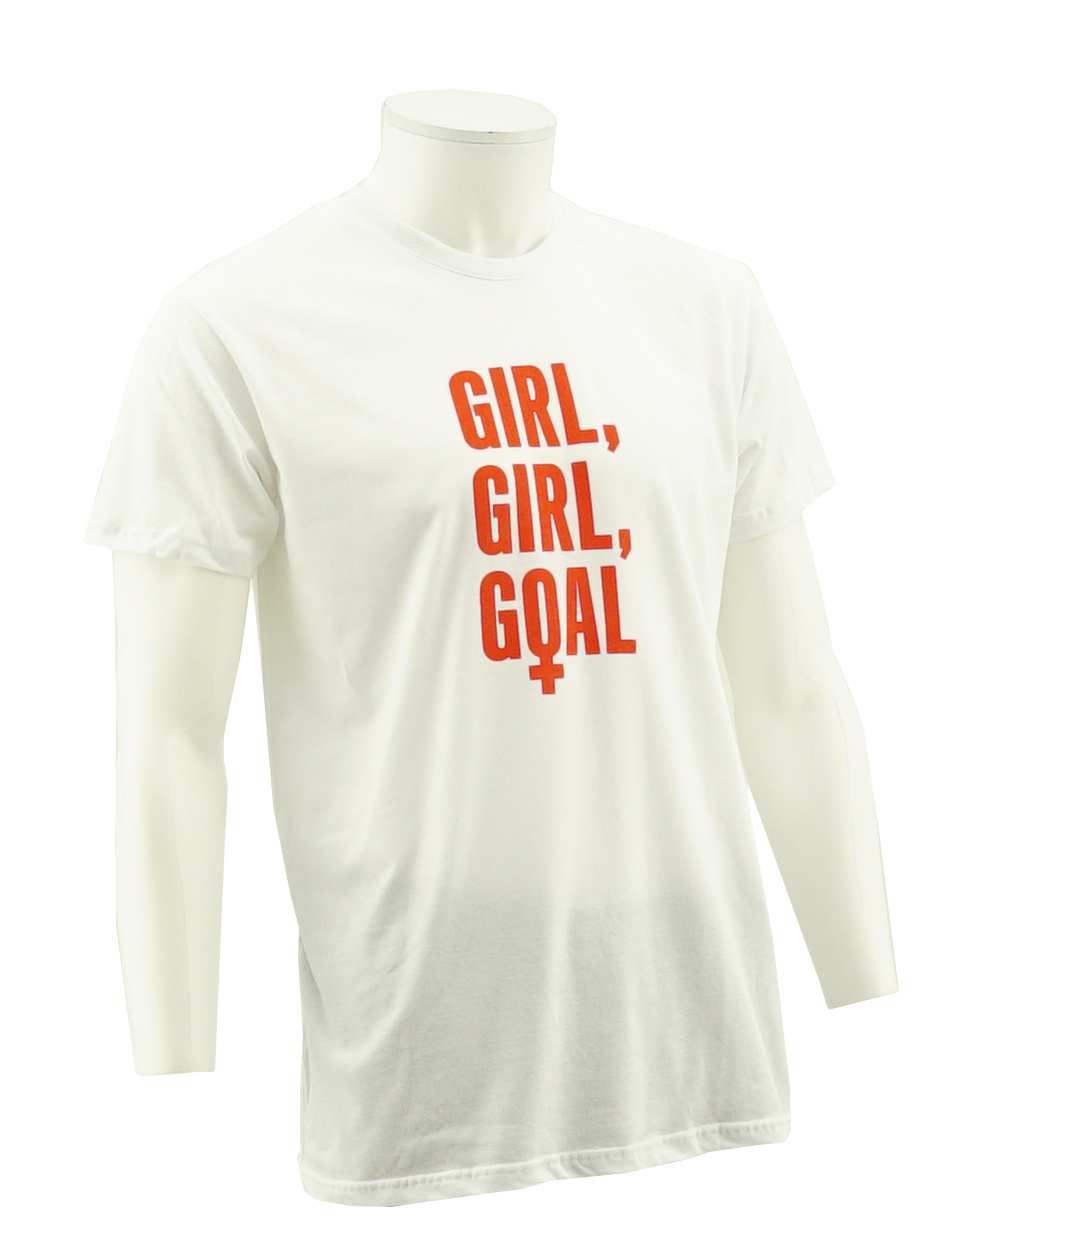 T-shirt  Girl girl goal